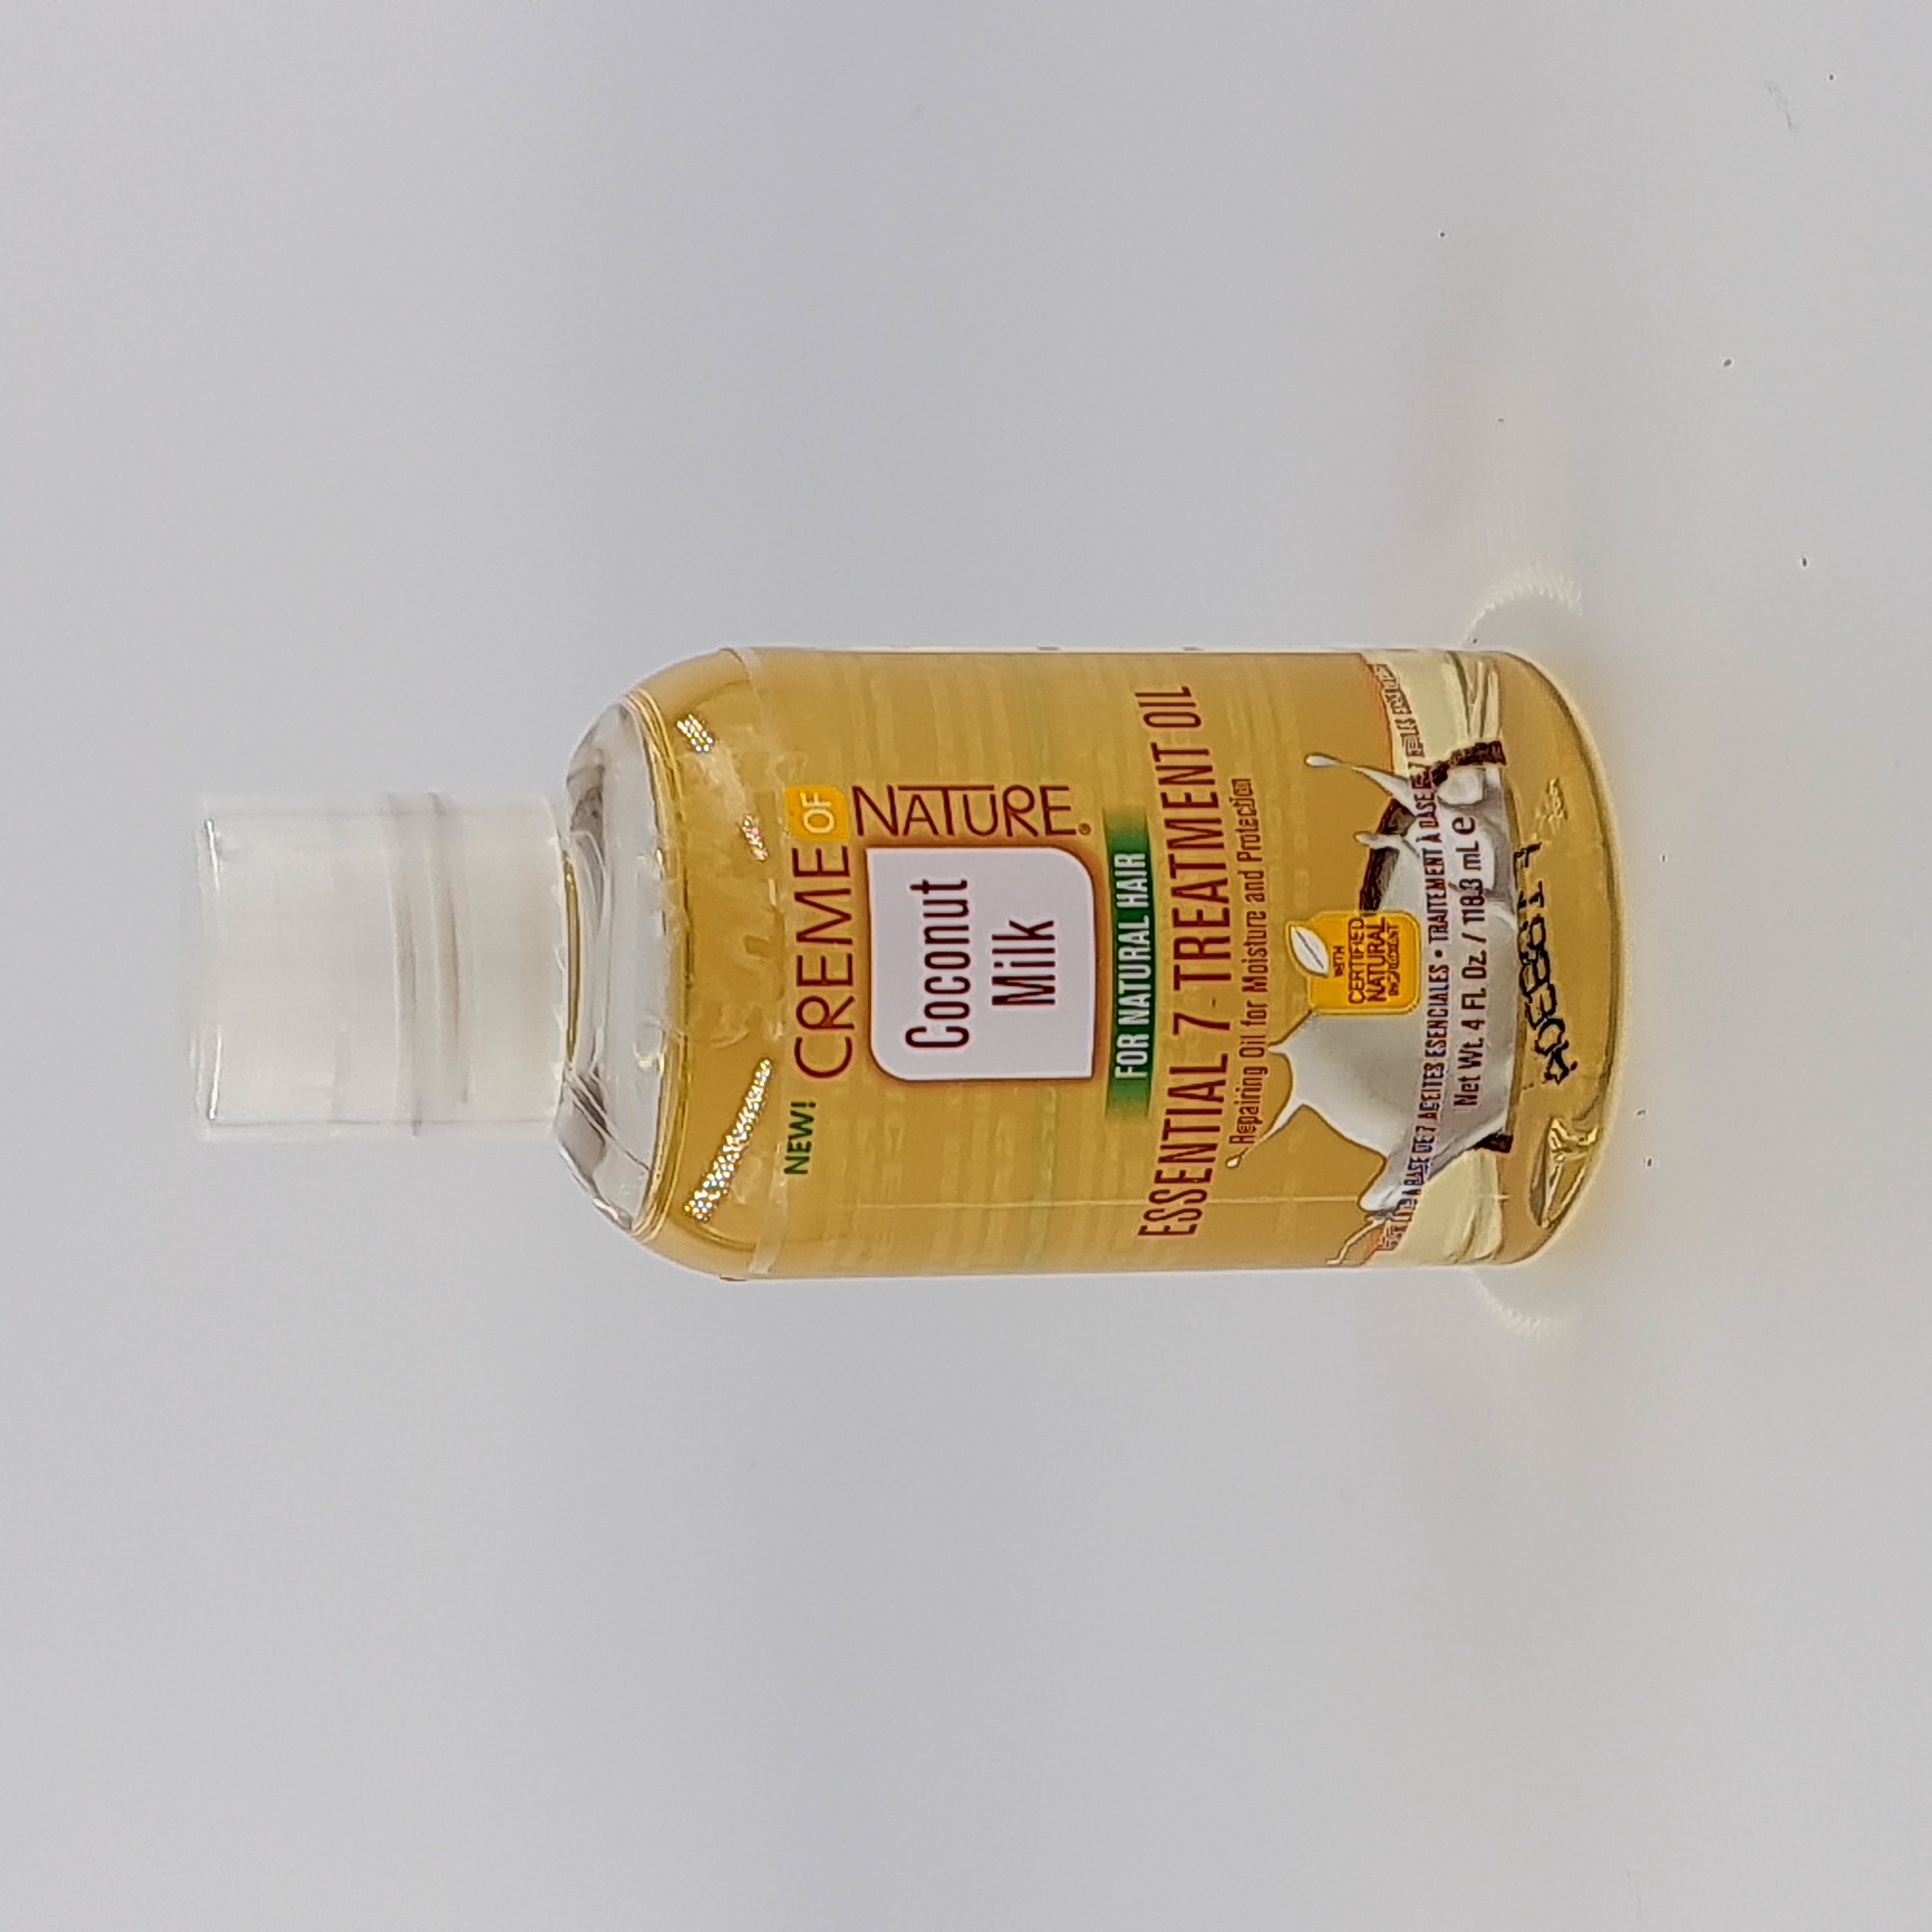 Creme of Nature Coconut Milk Essential 7 Treatment Oil 4 oz